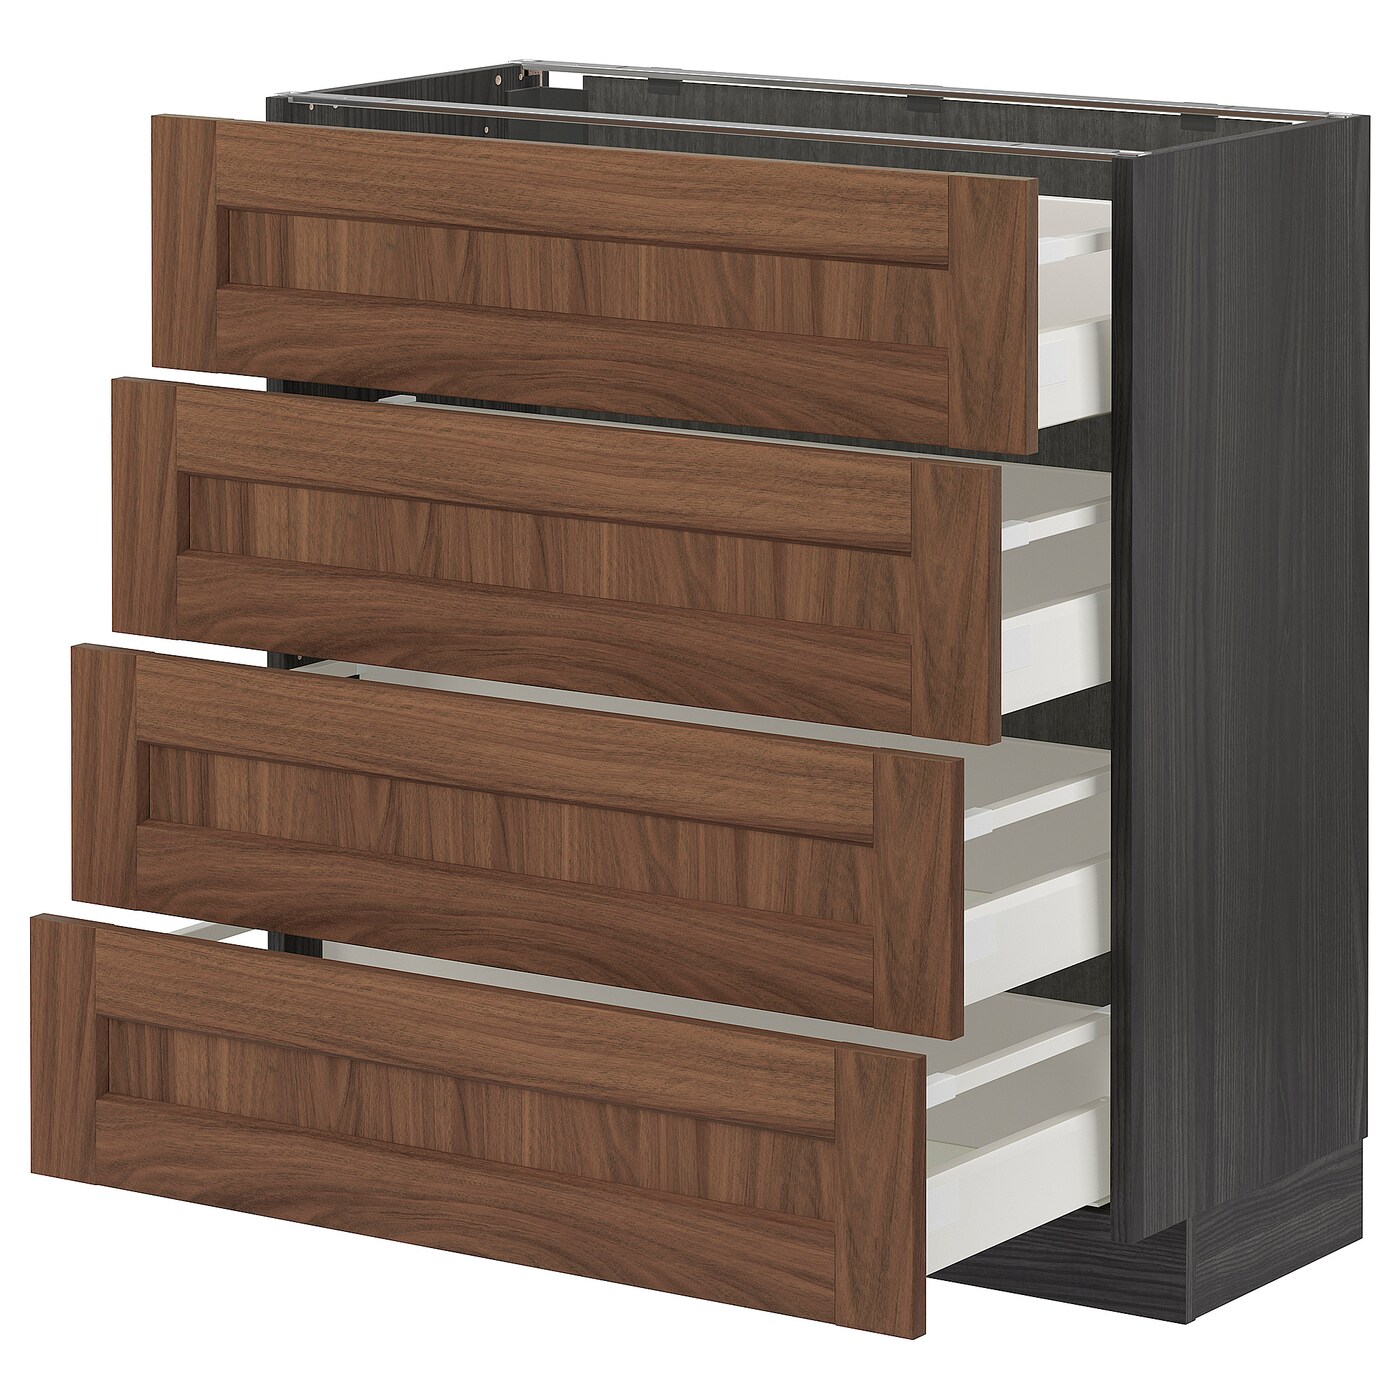 Напольный кухонный шкаф  - IKEA METOD MAXIMERA, 88x39,5x80см, черный/коричневый, МЕТОД МАКСИМЕРА ИКЕА